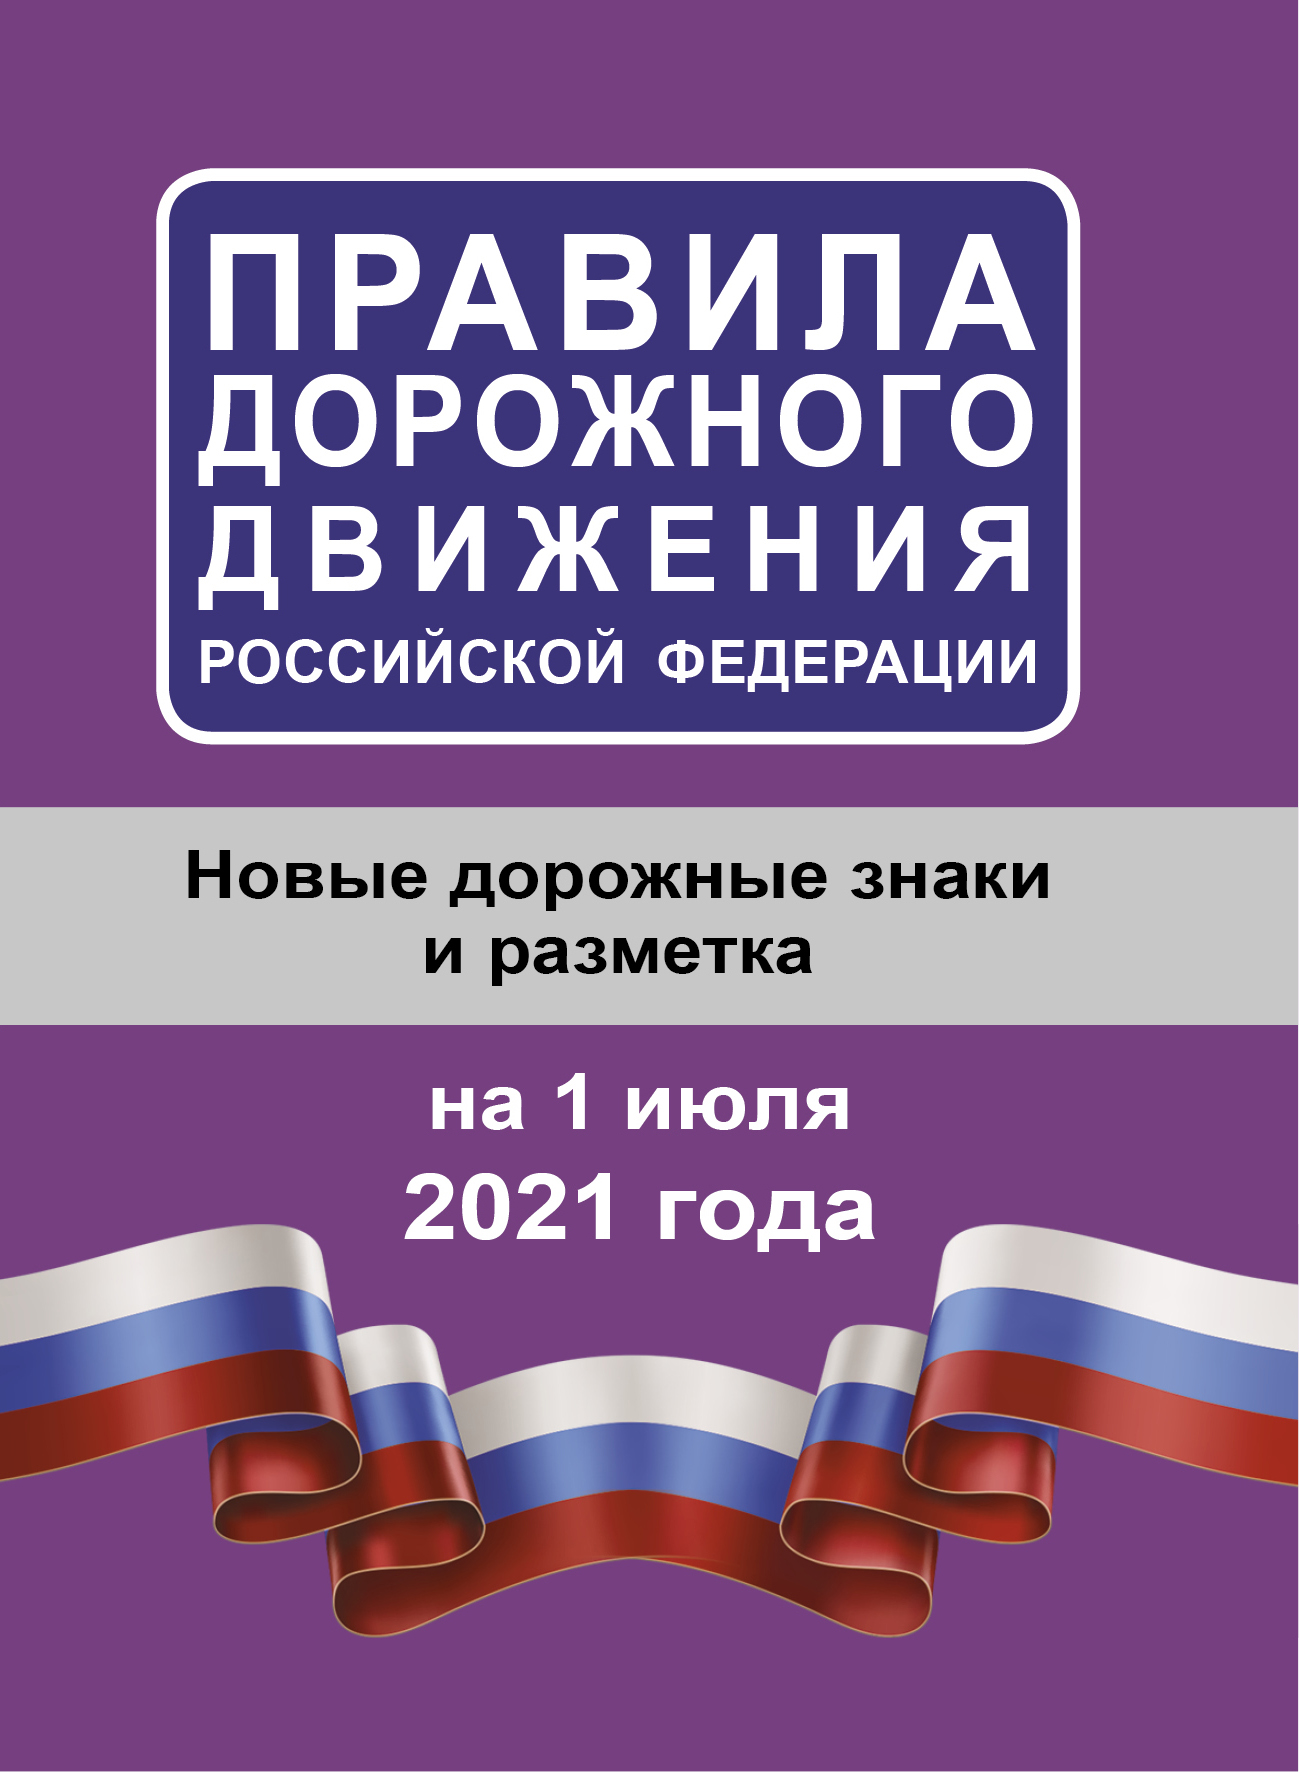 Правила дорожного движения Российской Федерации на 01.07.2021 года 